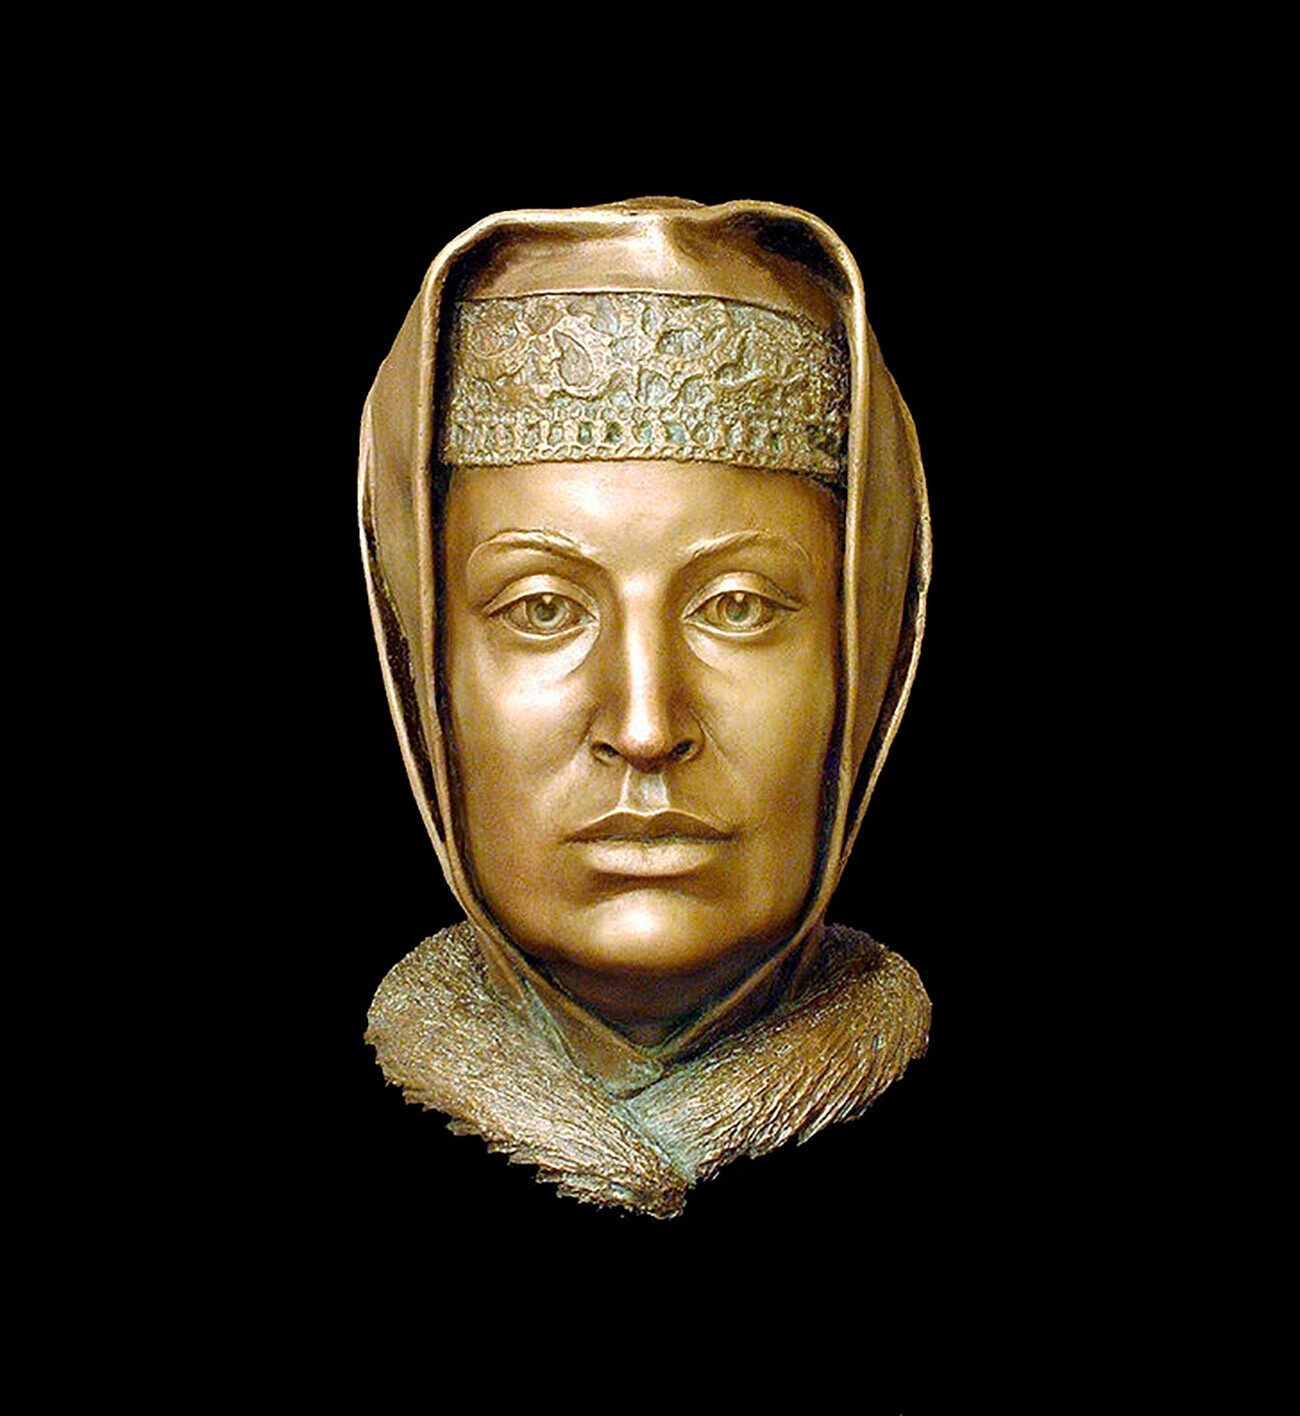 Moskovska velika kneginja Sofija Paleolog (ok. 1455 - 7. april 1503). Forenzična rekonstrukcija obraza, S. A. Nikitin, 1994.
